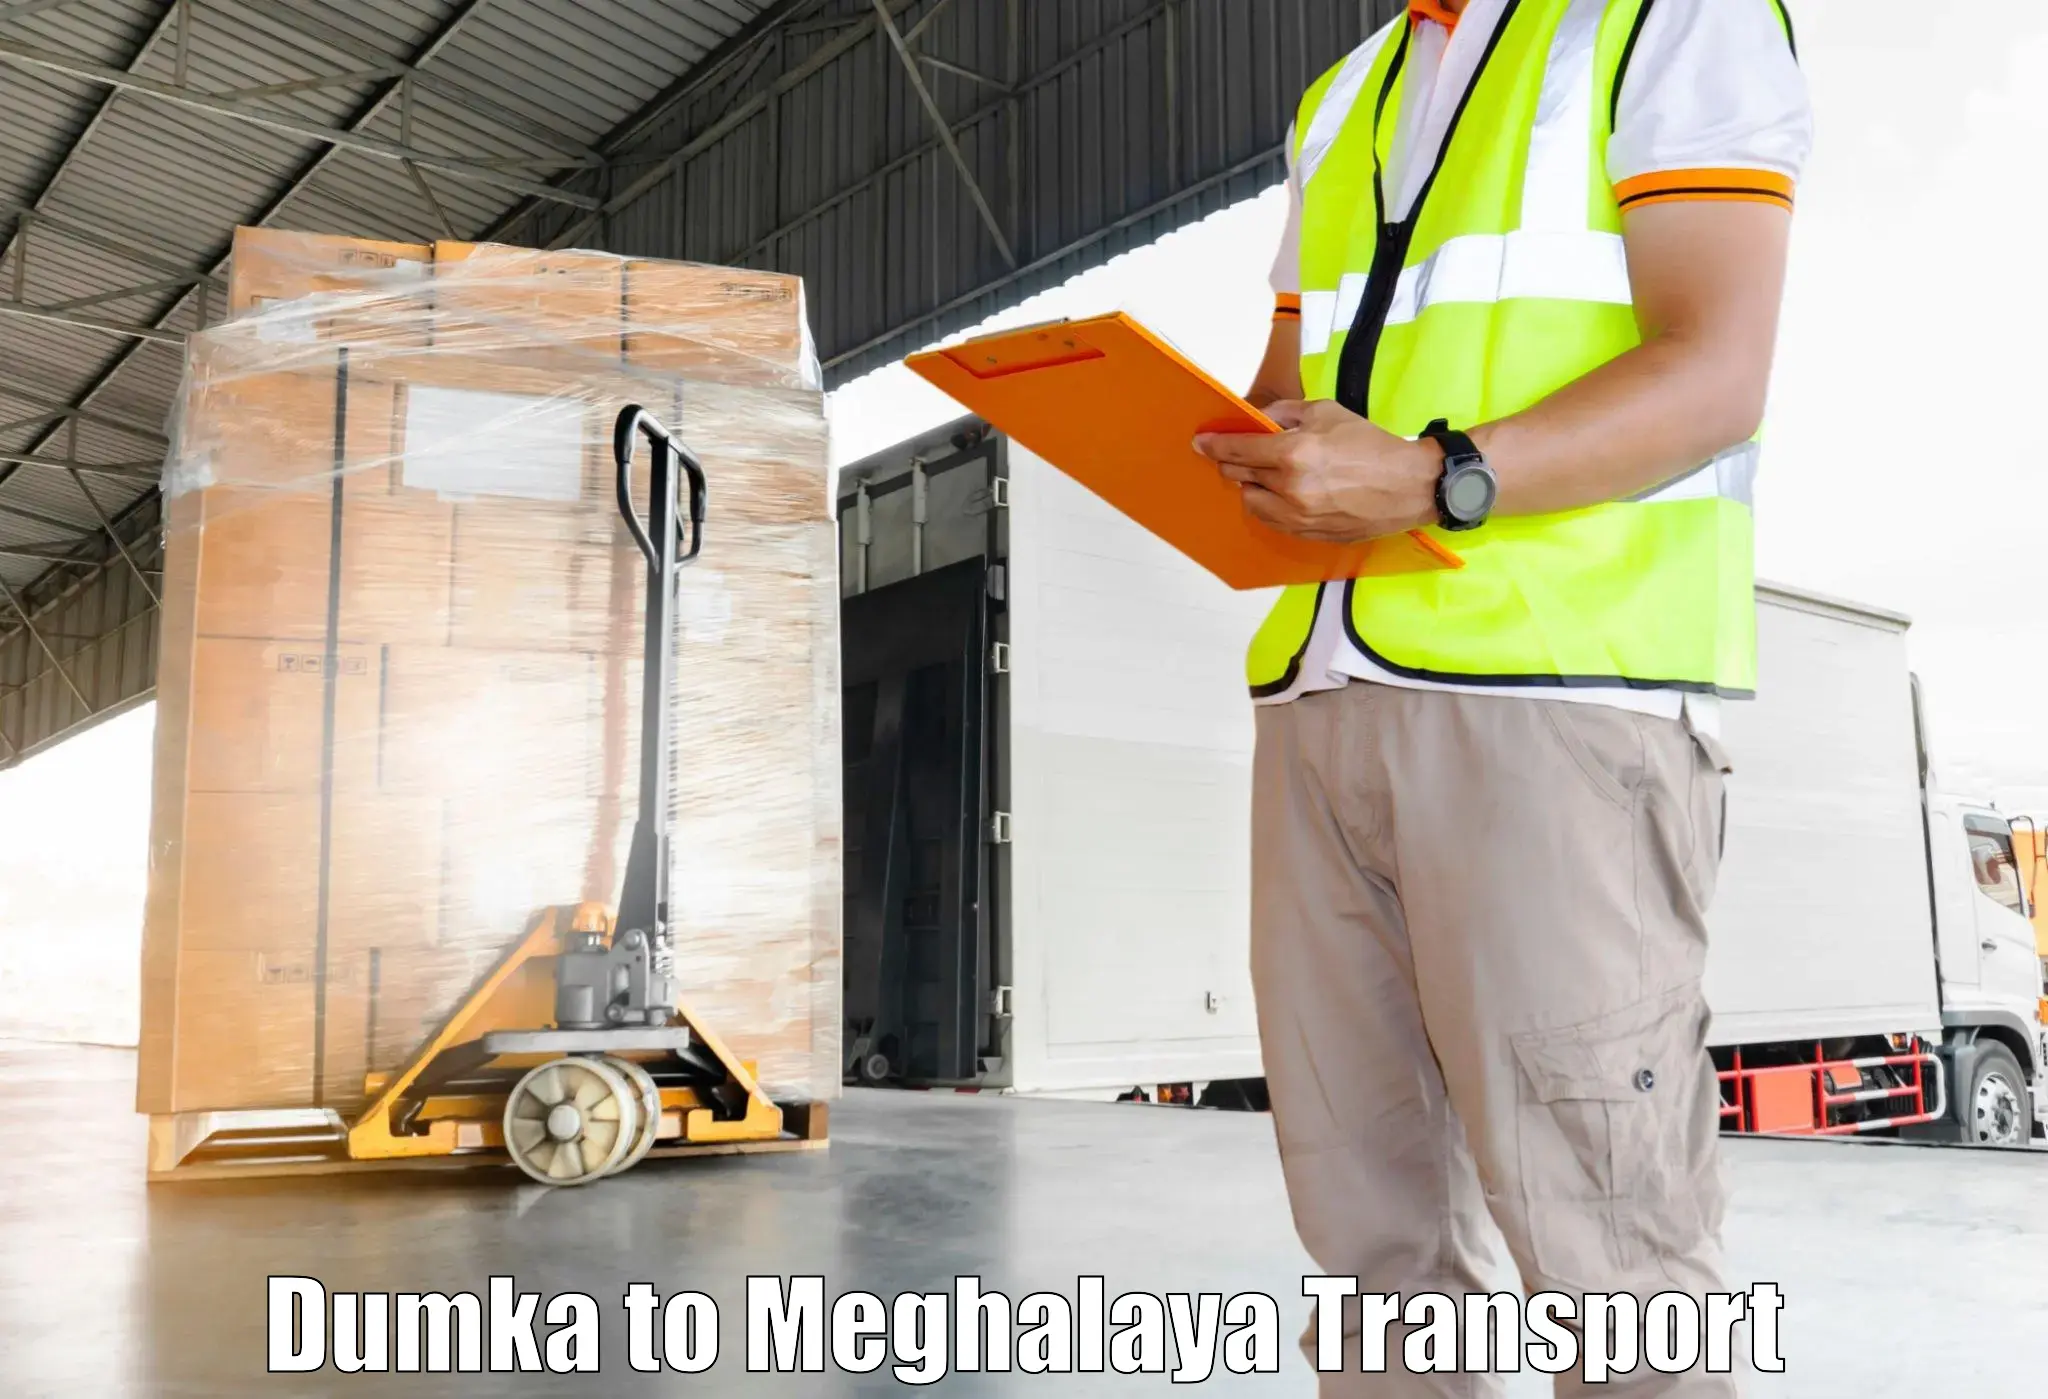 Furniture transport service Dumka to Shillong